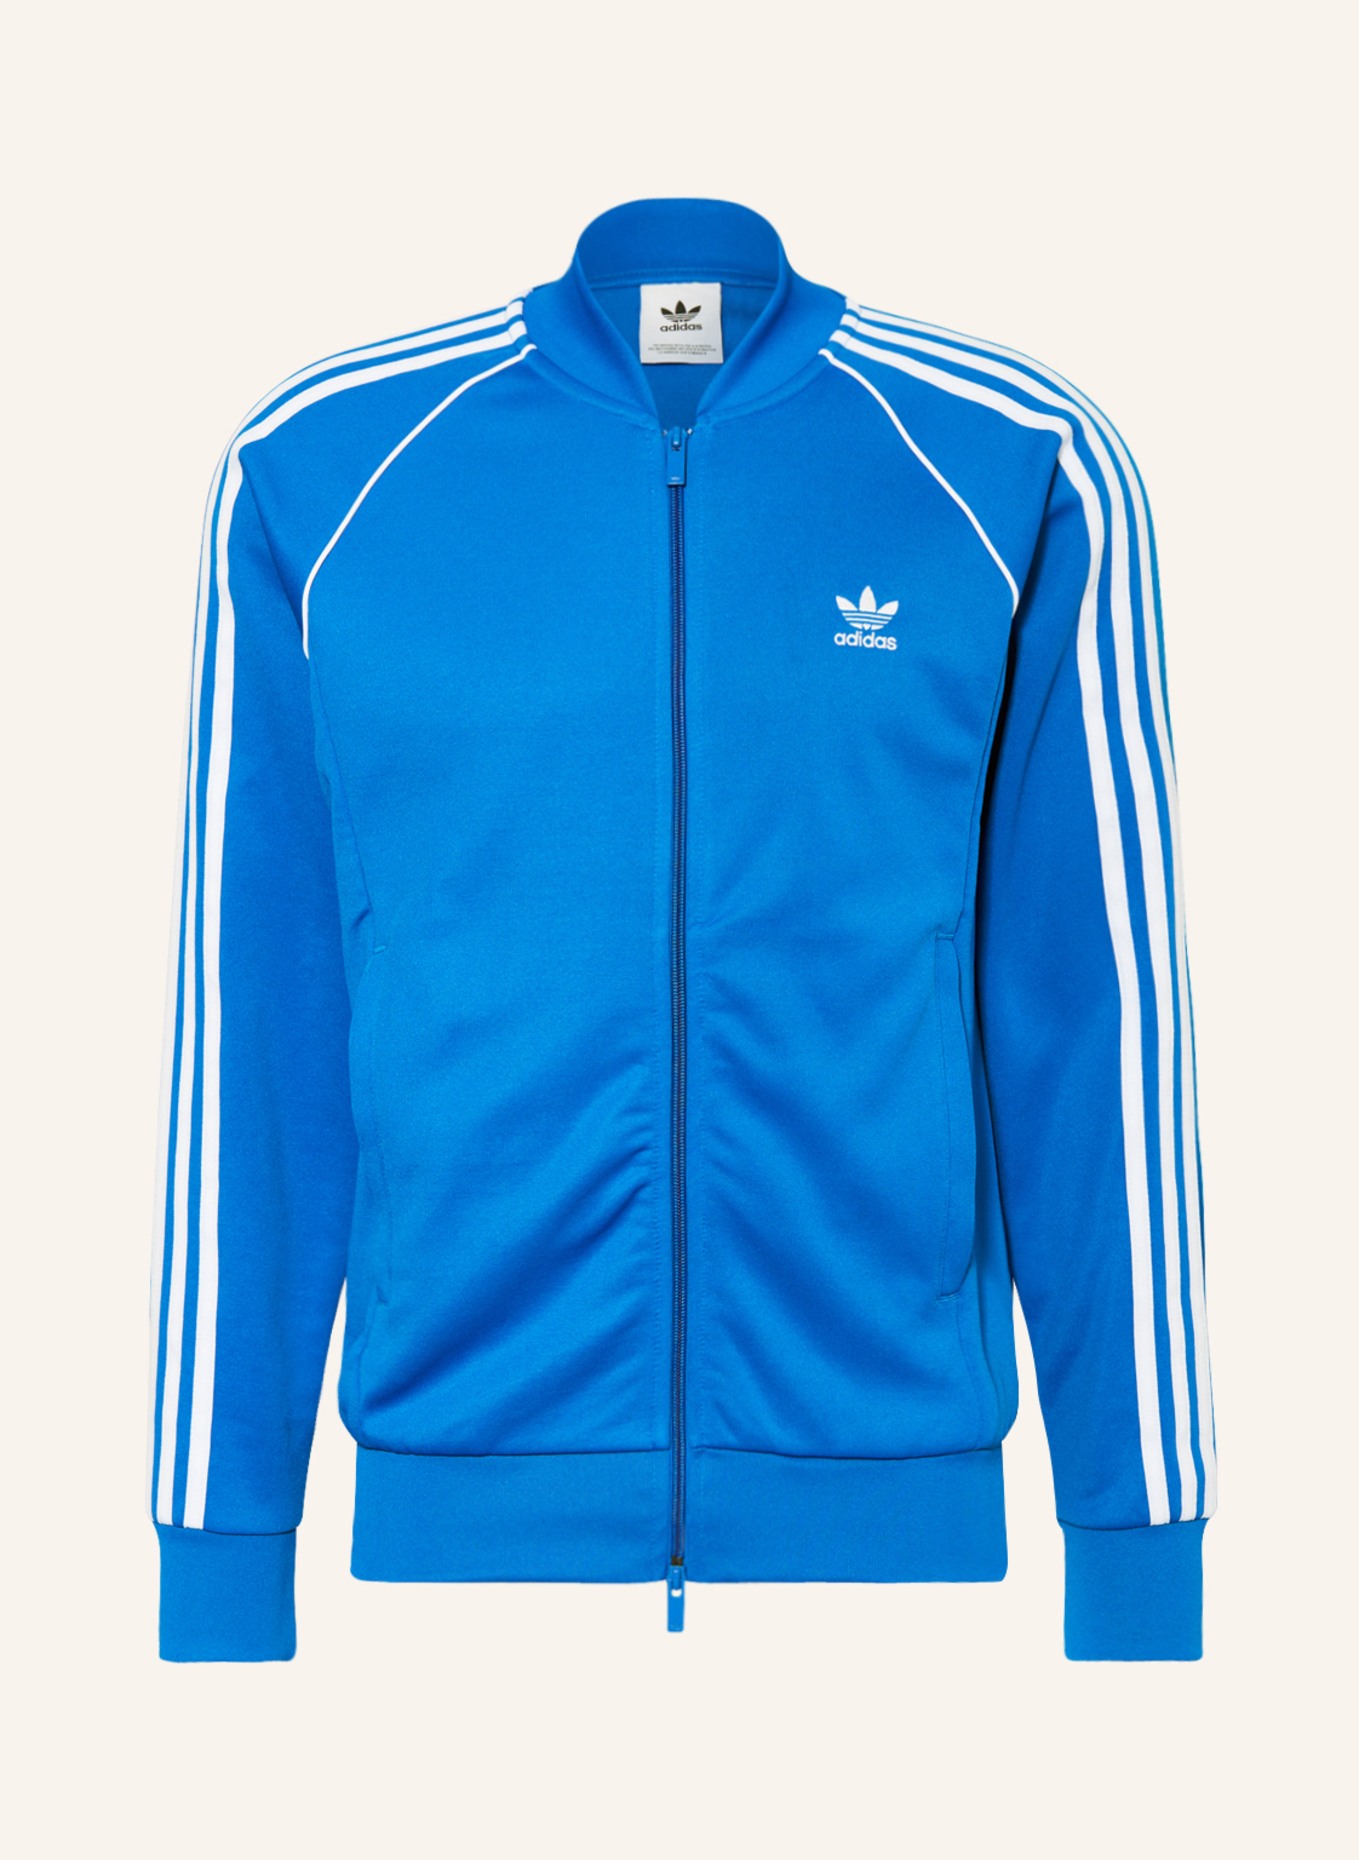 Training white ORIGINALS SST adidas jacket ADICOLOR in CLASSICS Originals blue/